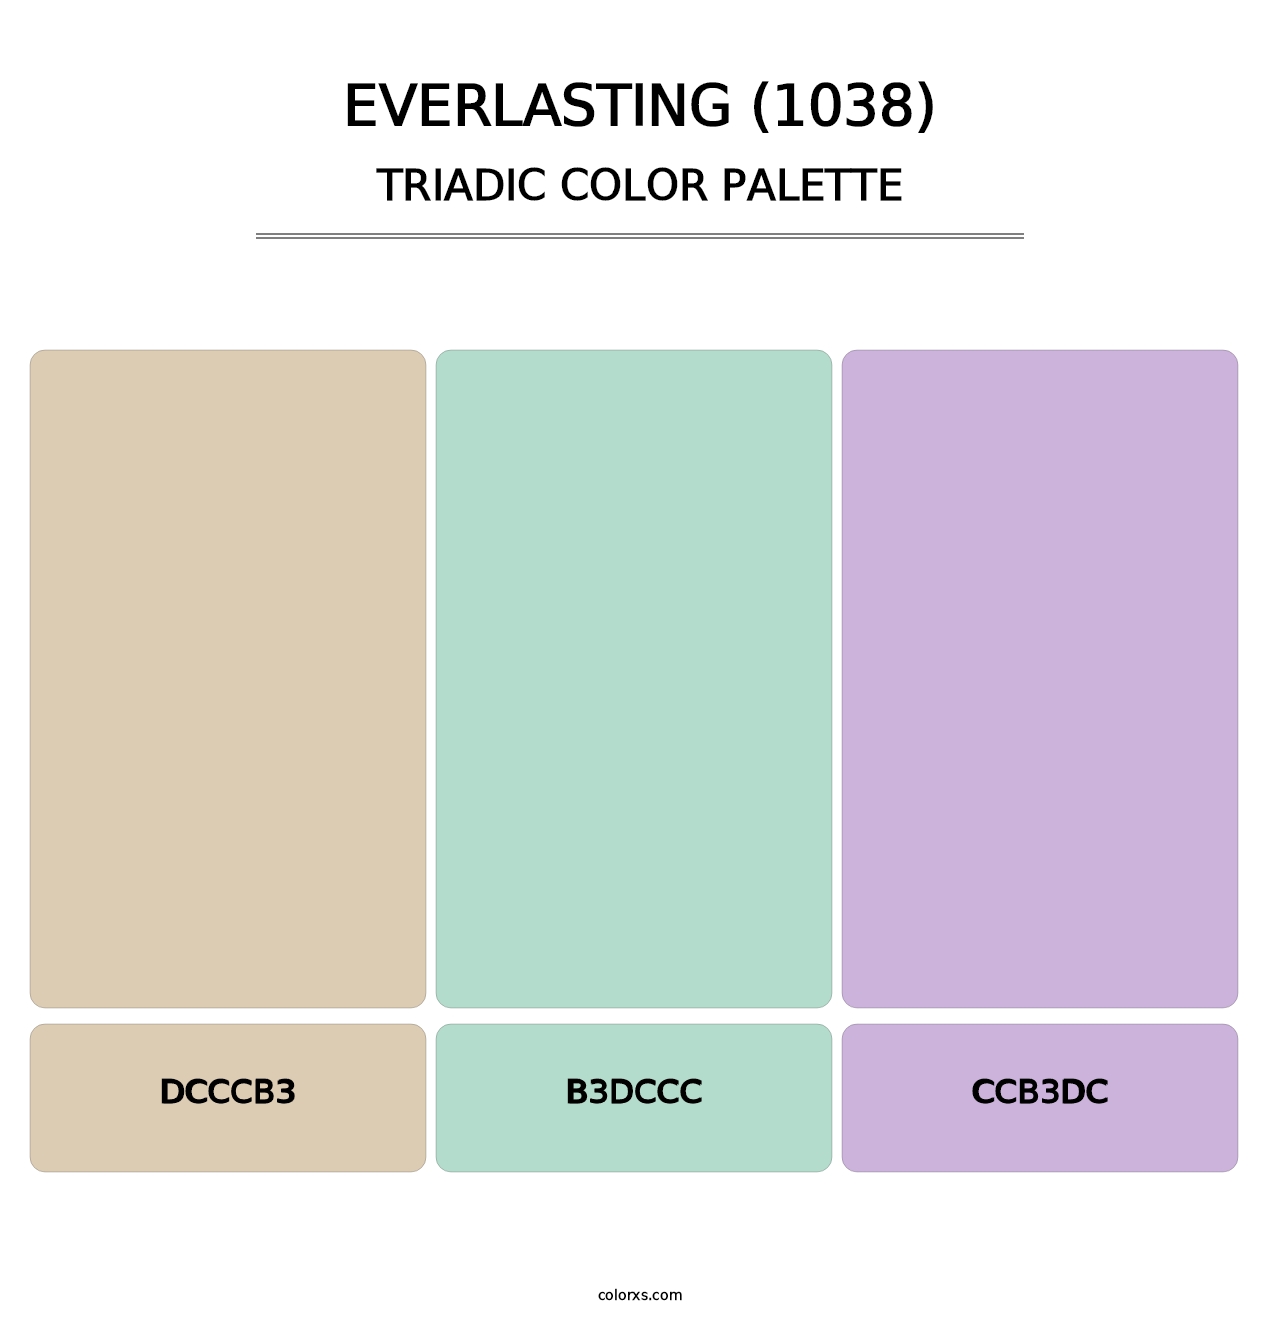 Everlasting (1038) - Triadic Color Palette